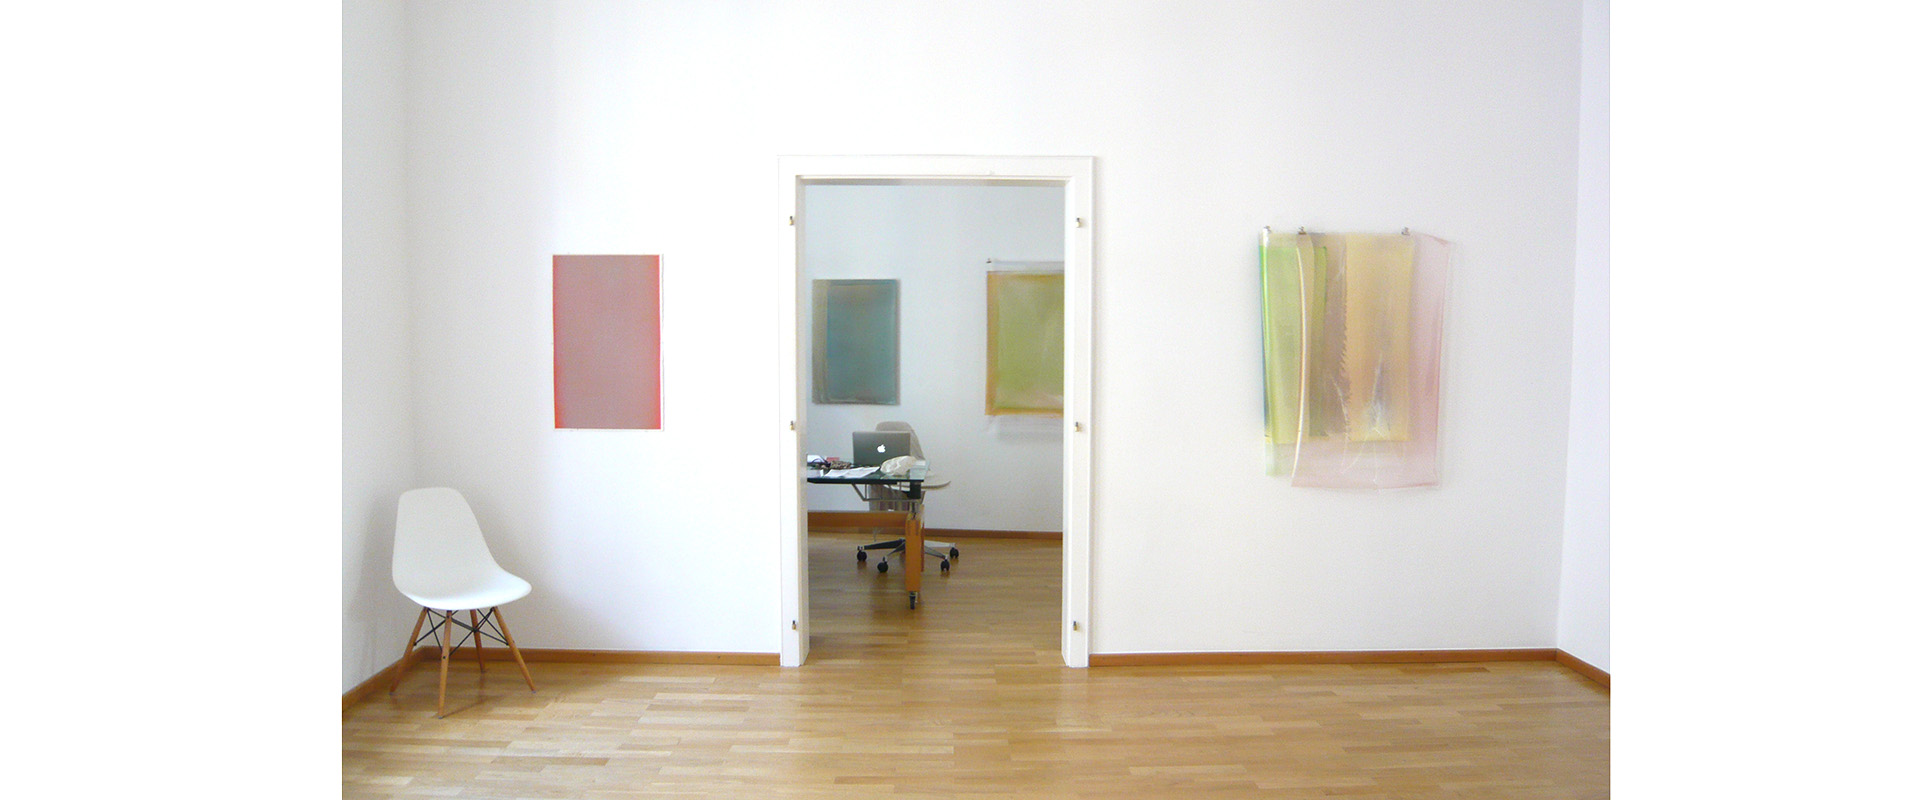 Ausstellungsansicht "Die Transparenz der Farbe. Matt McClune - Nick Terry", Galerie Renate Bender 2013